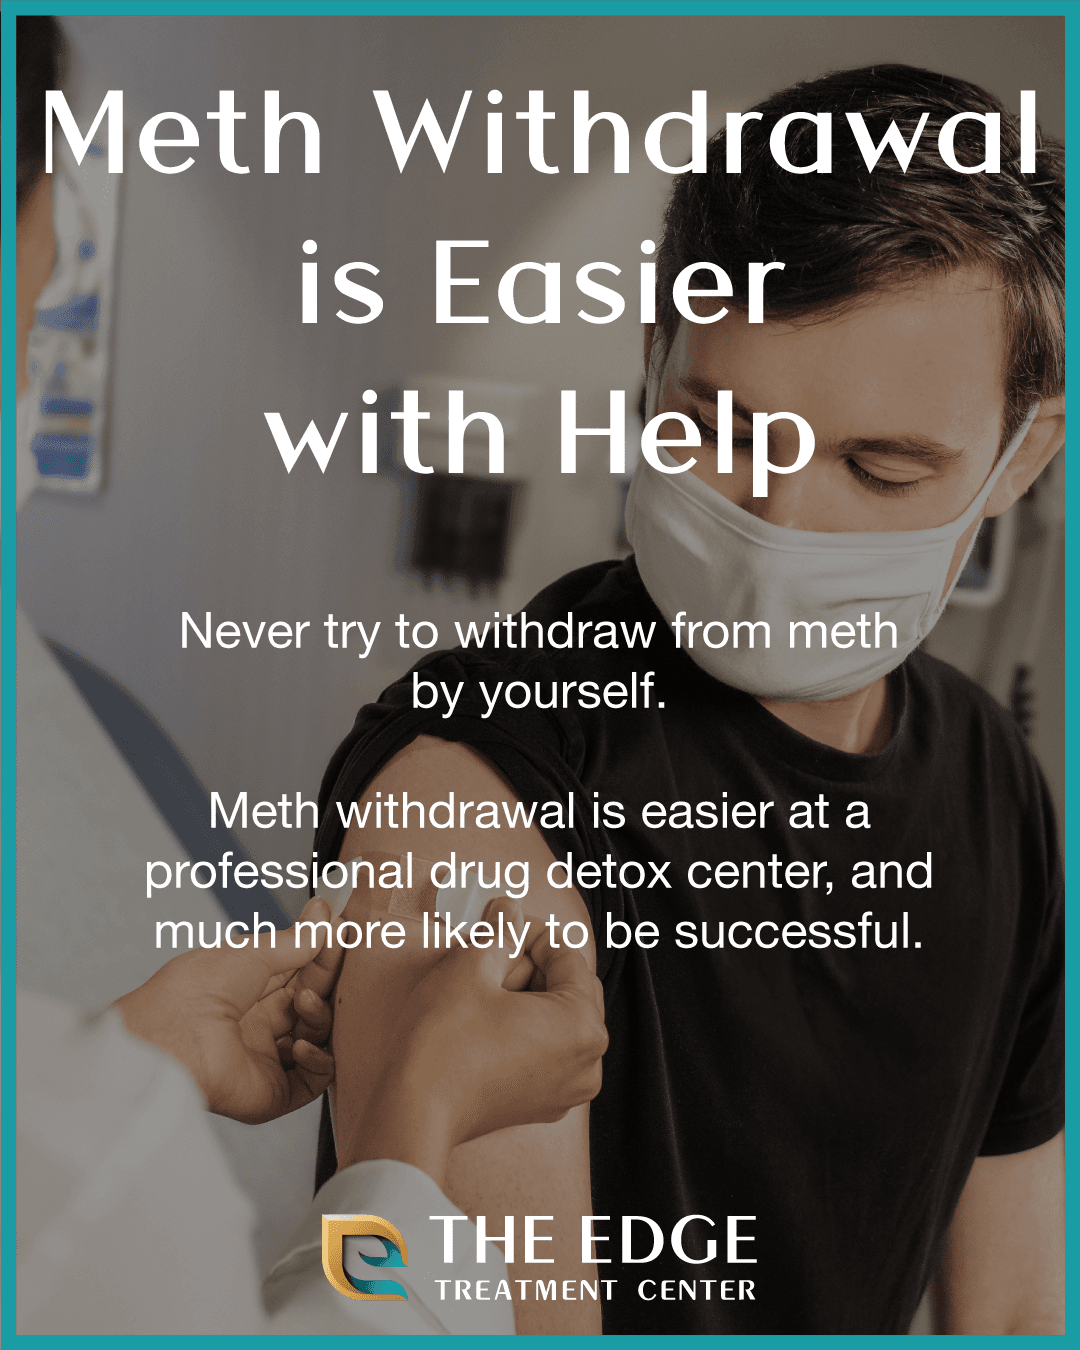 Can Meth Withdrawal Be Easier?